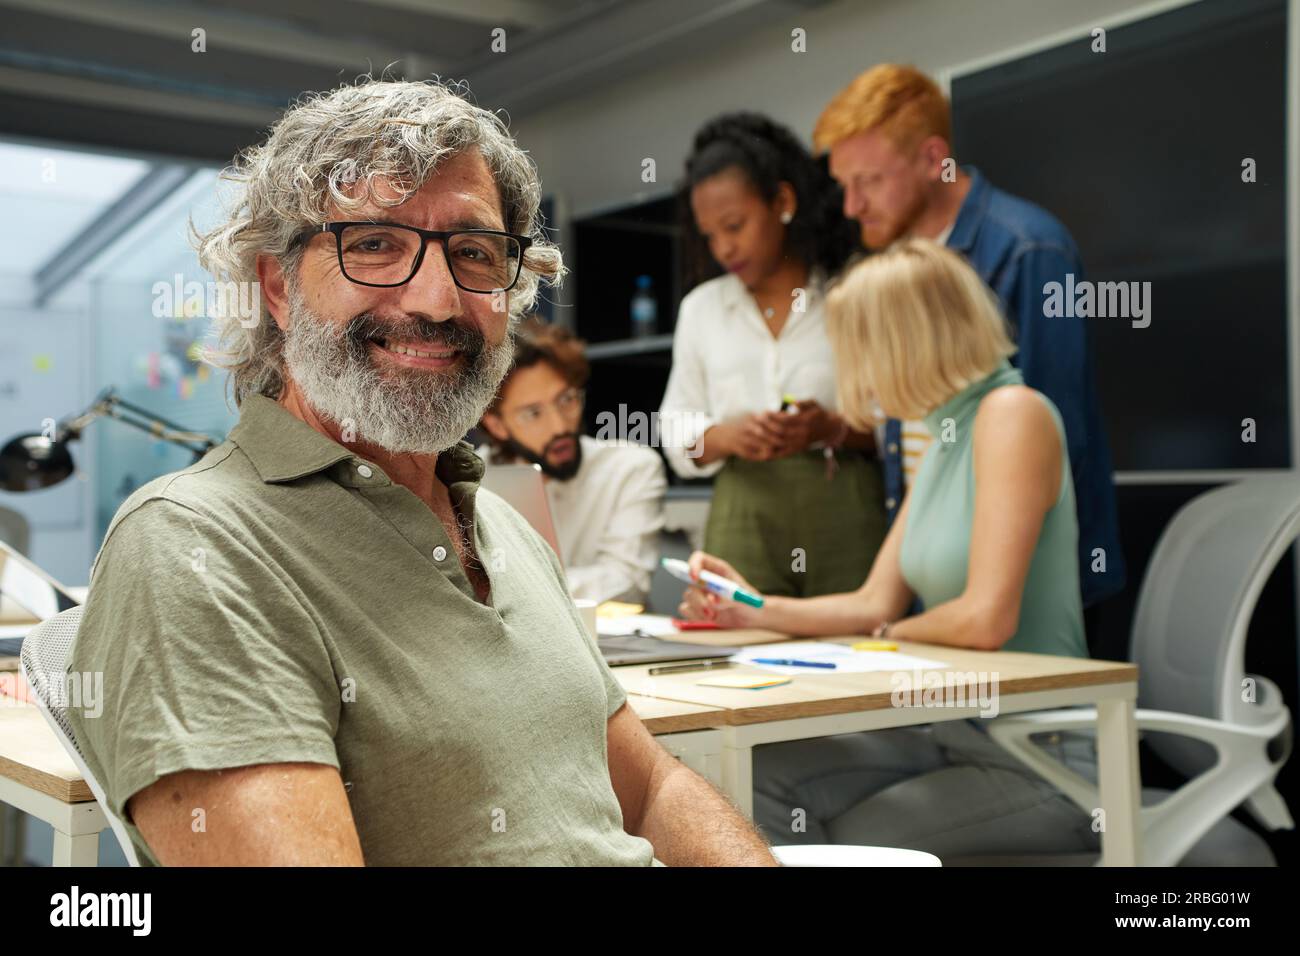 Ritratto dell'uomo d'ufficio che sorride e guarda la fotocamera. Sullo sfondo c'è un gruppo di persone Foto Stock